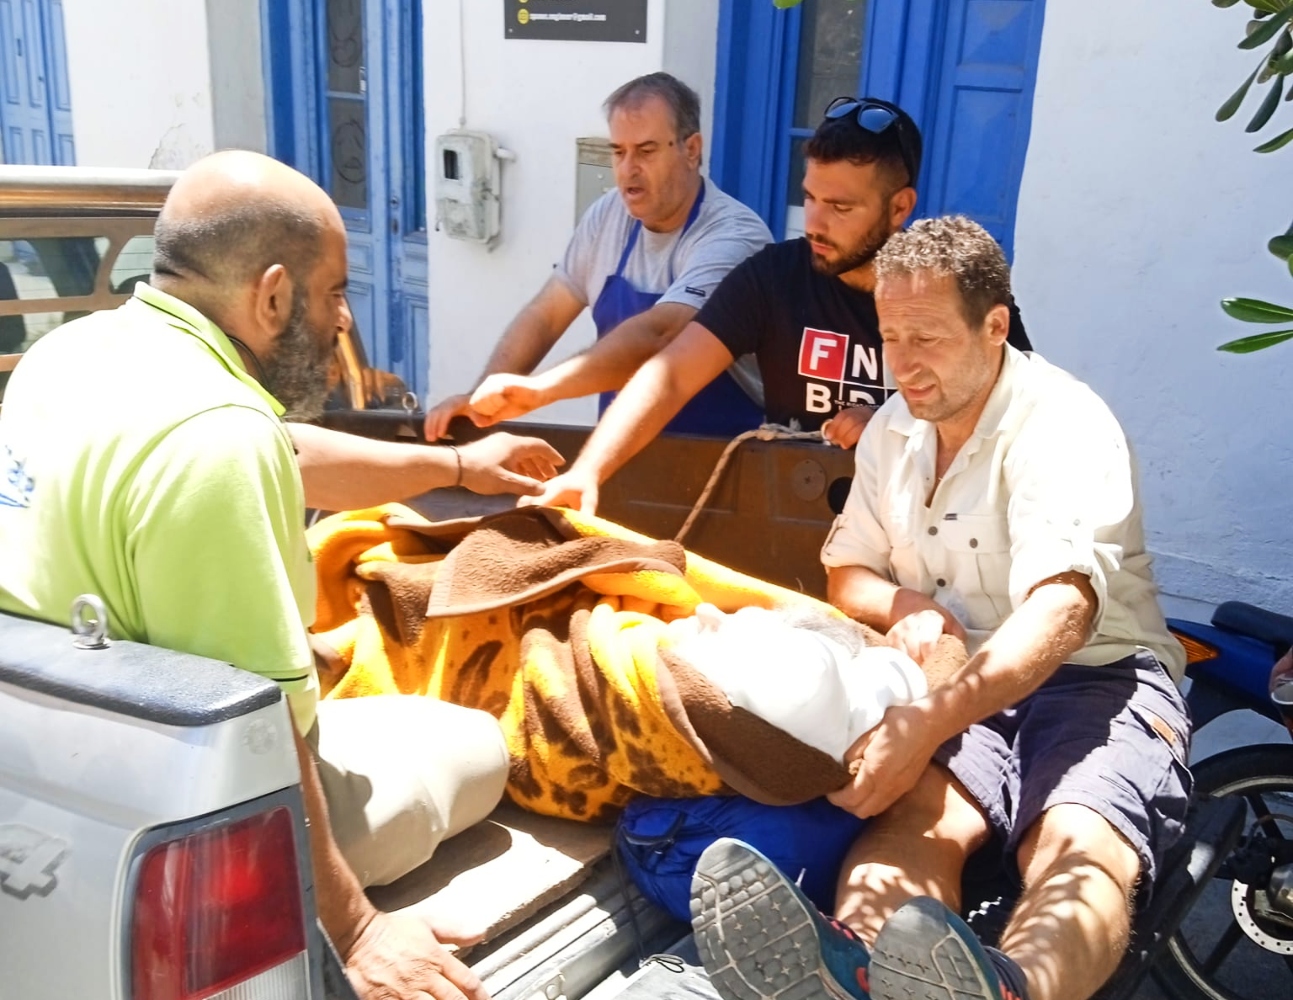 Εικόνες ντροπής στην Ικαρία με ασθενή σε καρότσα αγροτικού ελλείψει  ασθενοφόρου | ROSA.GR